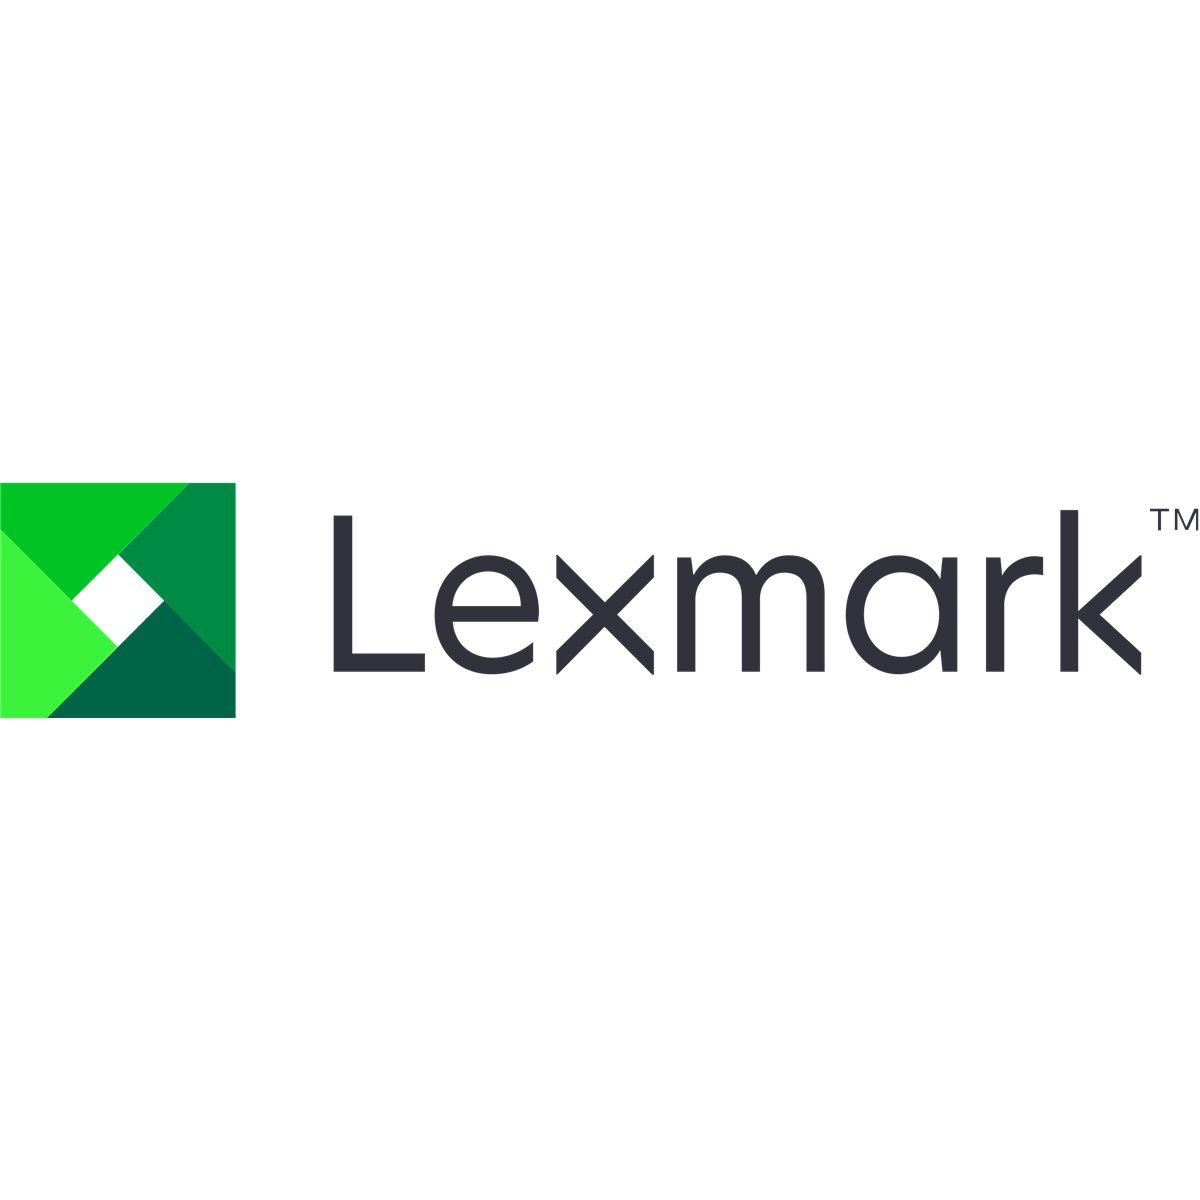 Lexmark MS82x SVC Tray Insert media tray